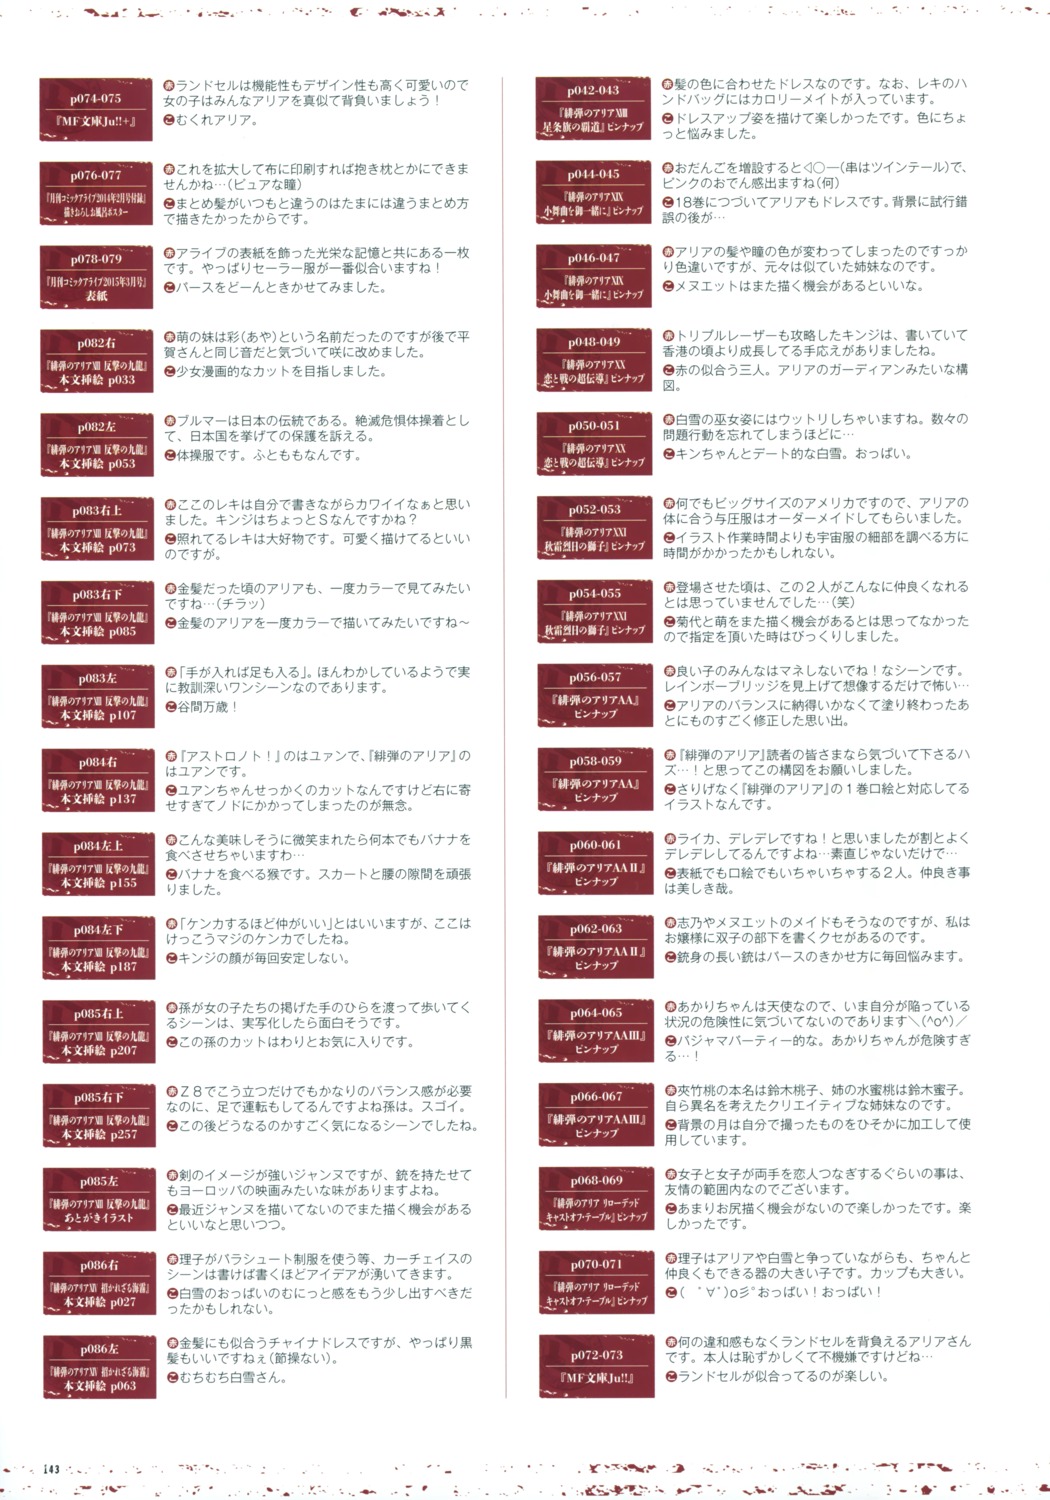 hidan_no_aria index_page kobuichi text